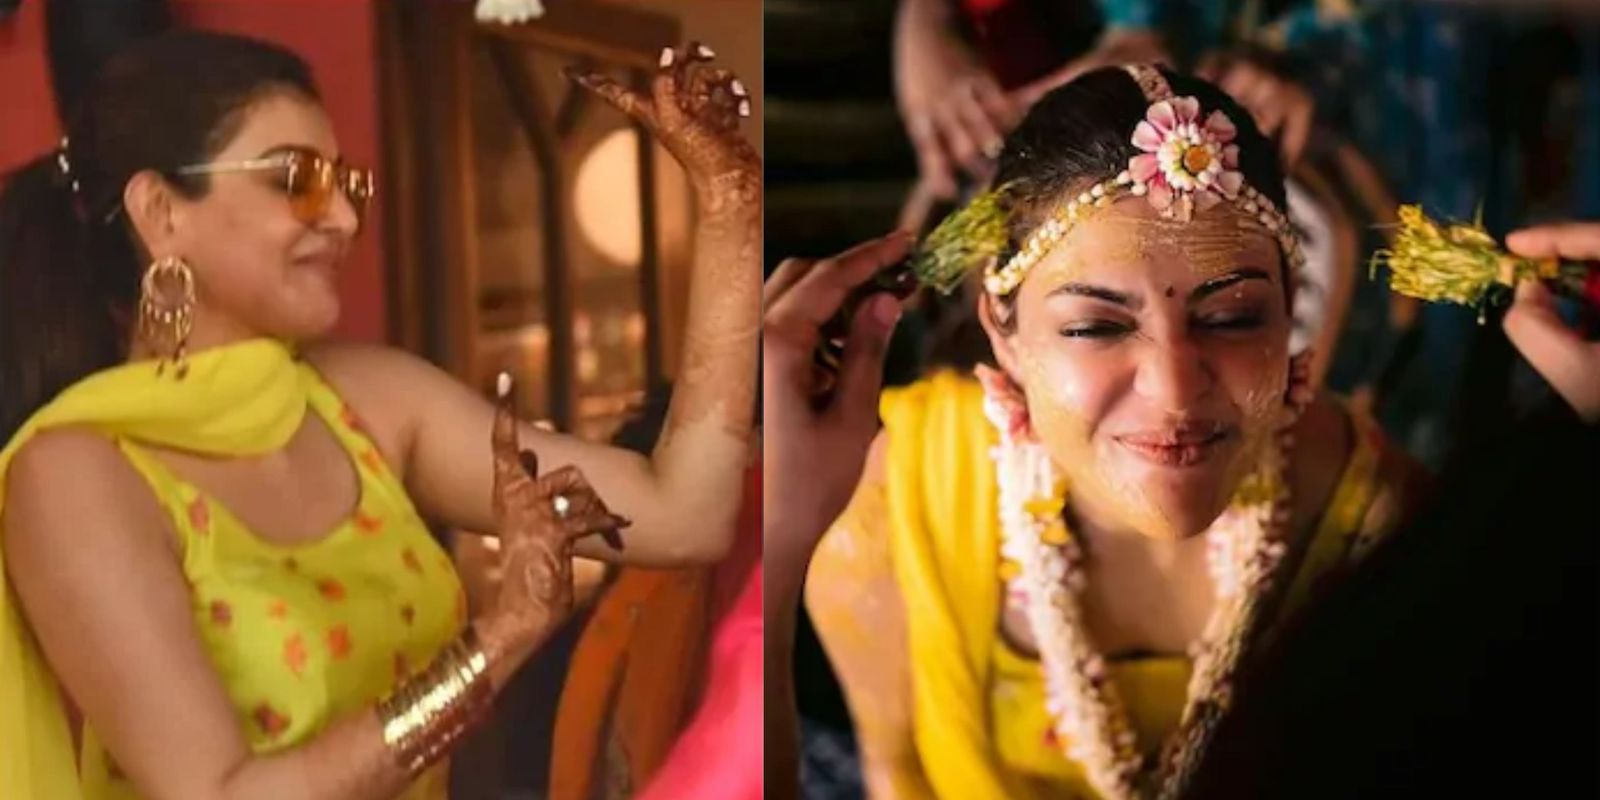 काजल अग्रवाल की शादी की रस्मों की तस्वीरें आई सामने, संगीत में जमकर किया था डांस 